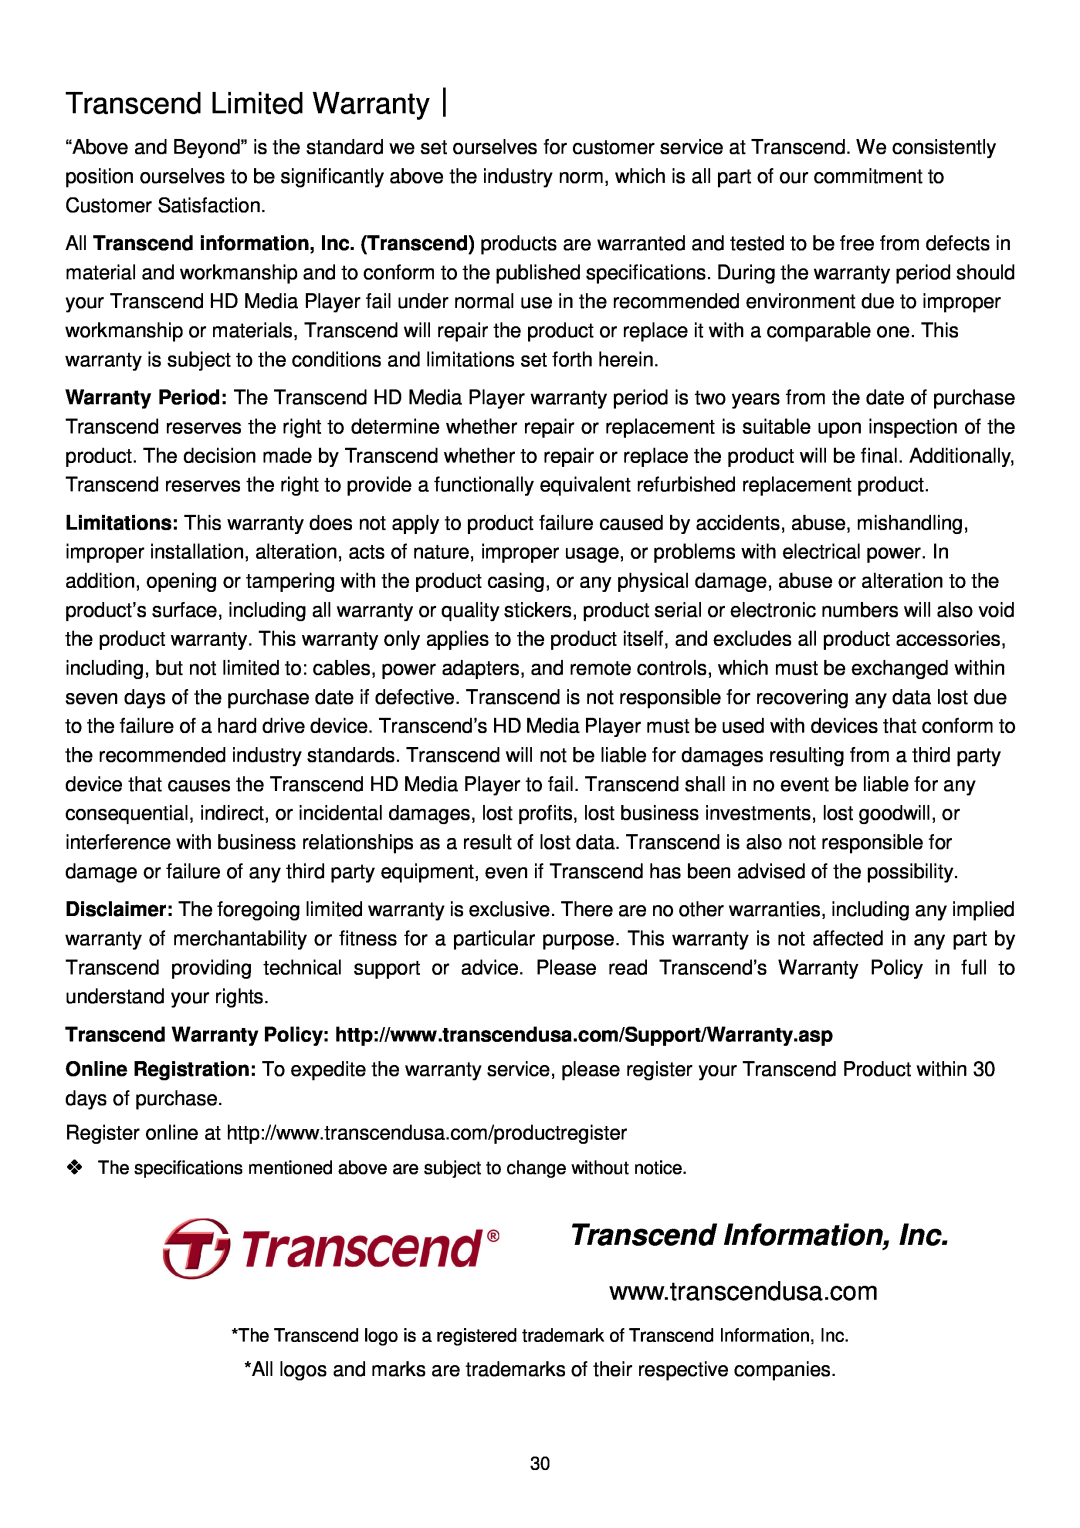 Transcend Information DMP10 user manual Transcend Limited Warranty︱, Transcend Information, Inc 